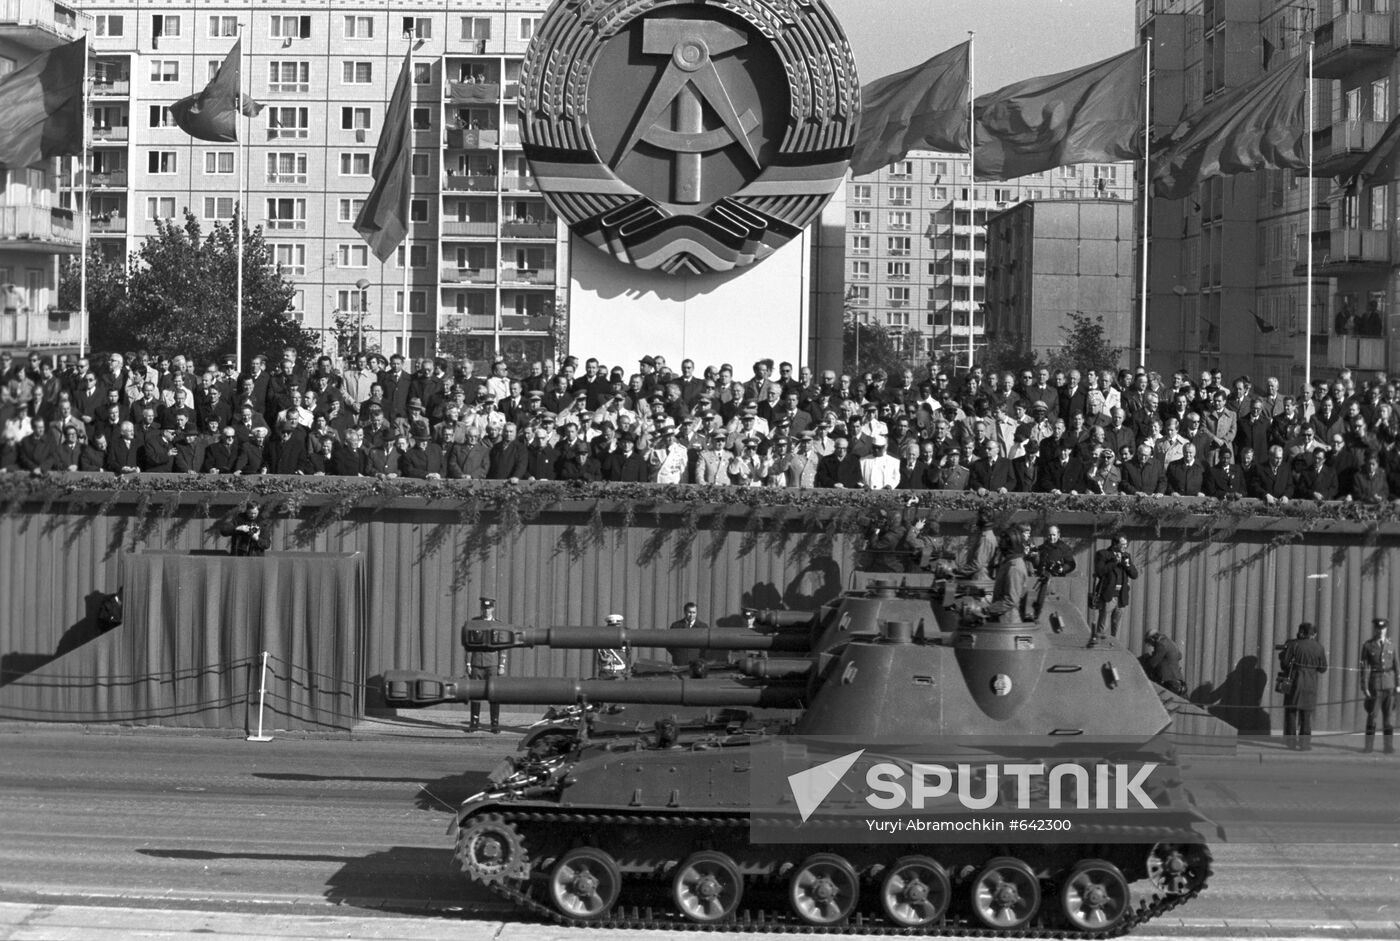 NVA parade in East Germany